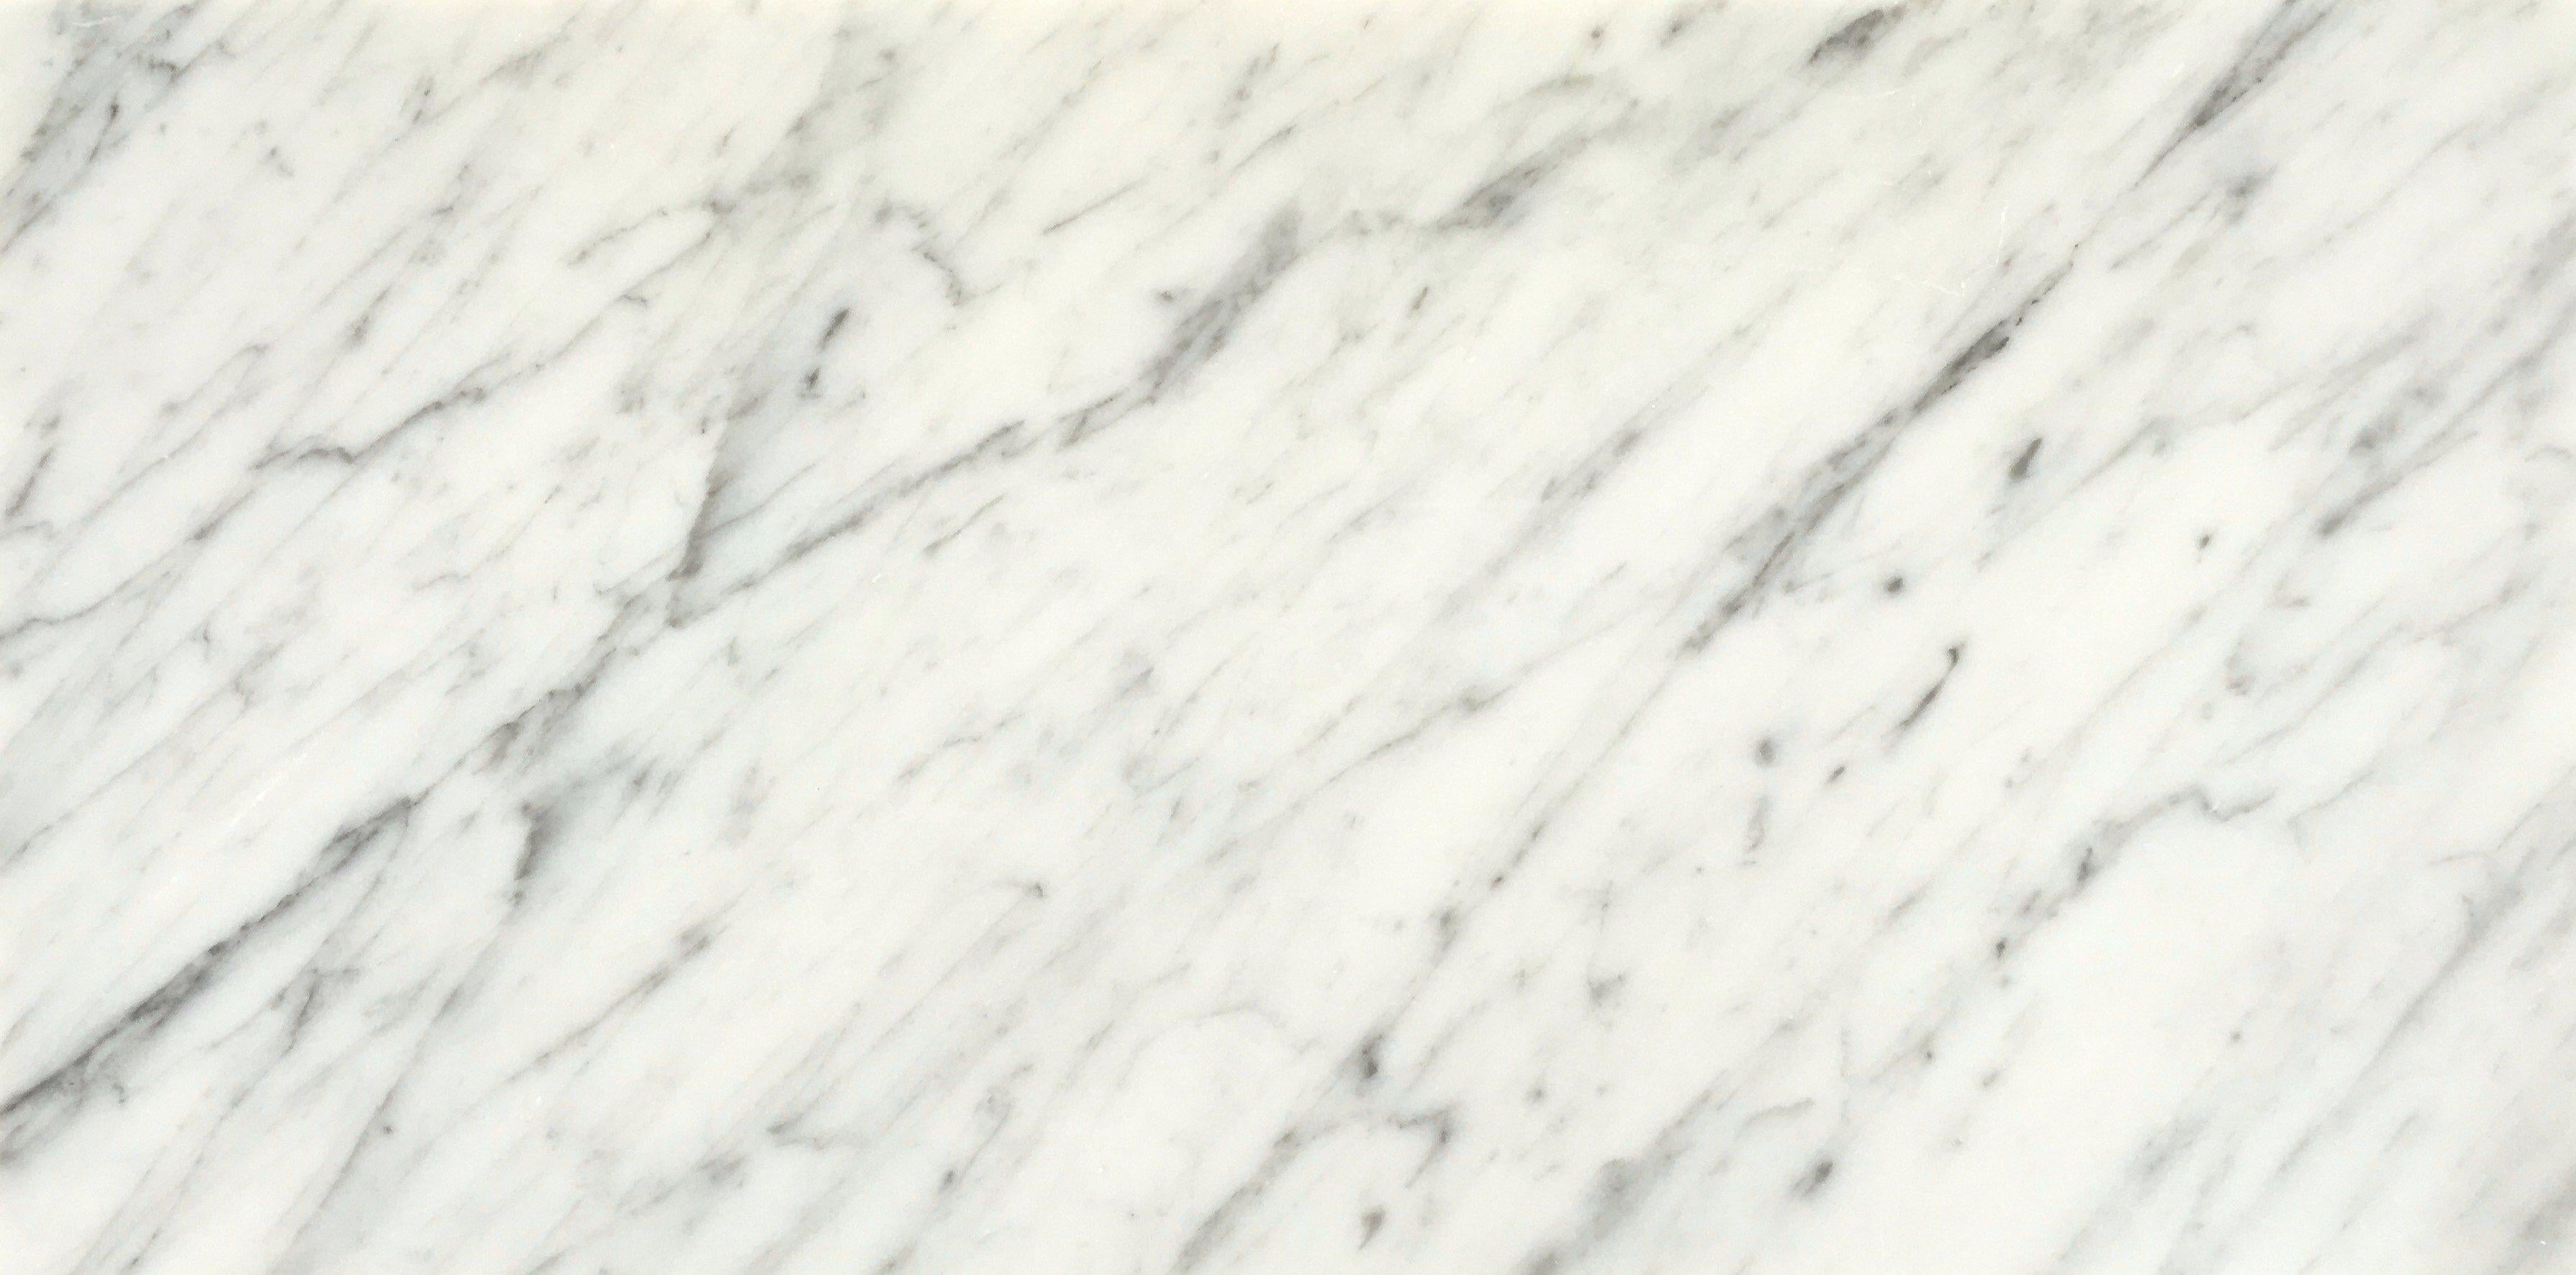 Nom : EOLO
Table basse en marbre conçue par F.Ficchi
Taille : Cm 110 x 80 x 36 H. (Forme ovale)
MATERIAL : Carrara blanc - marquina noir - plateau en cristal.
 